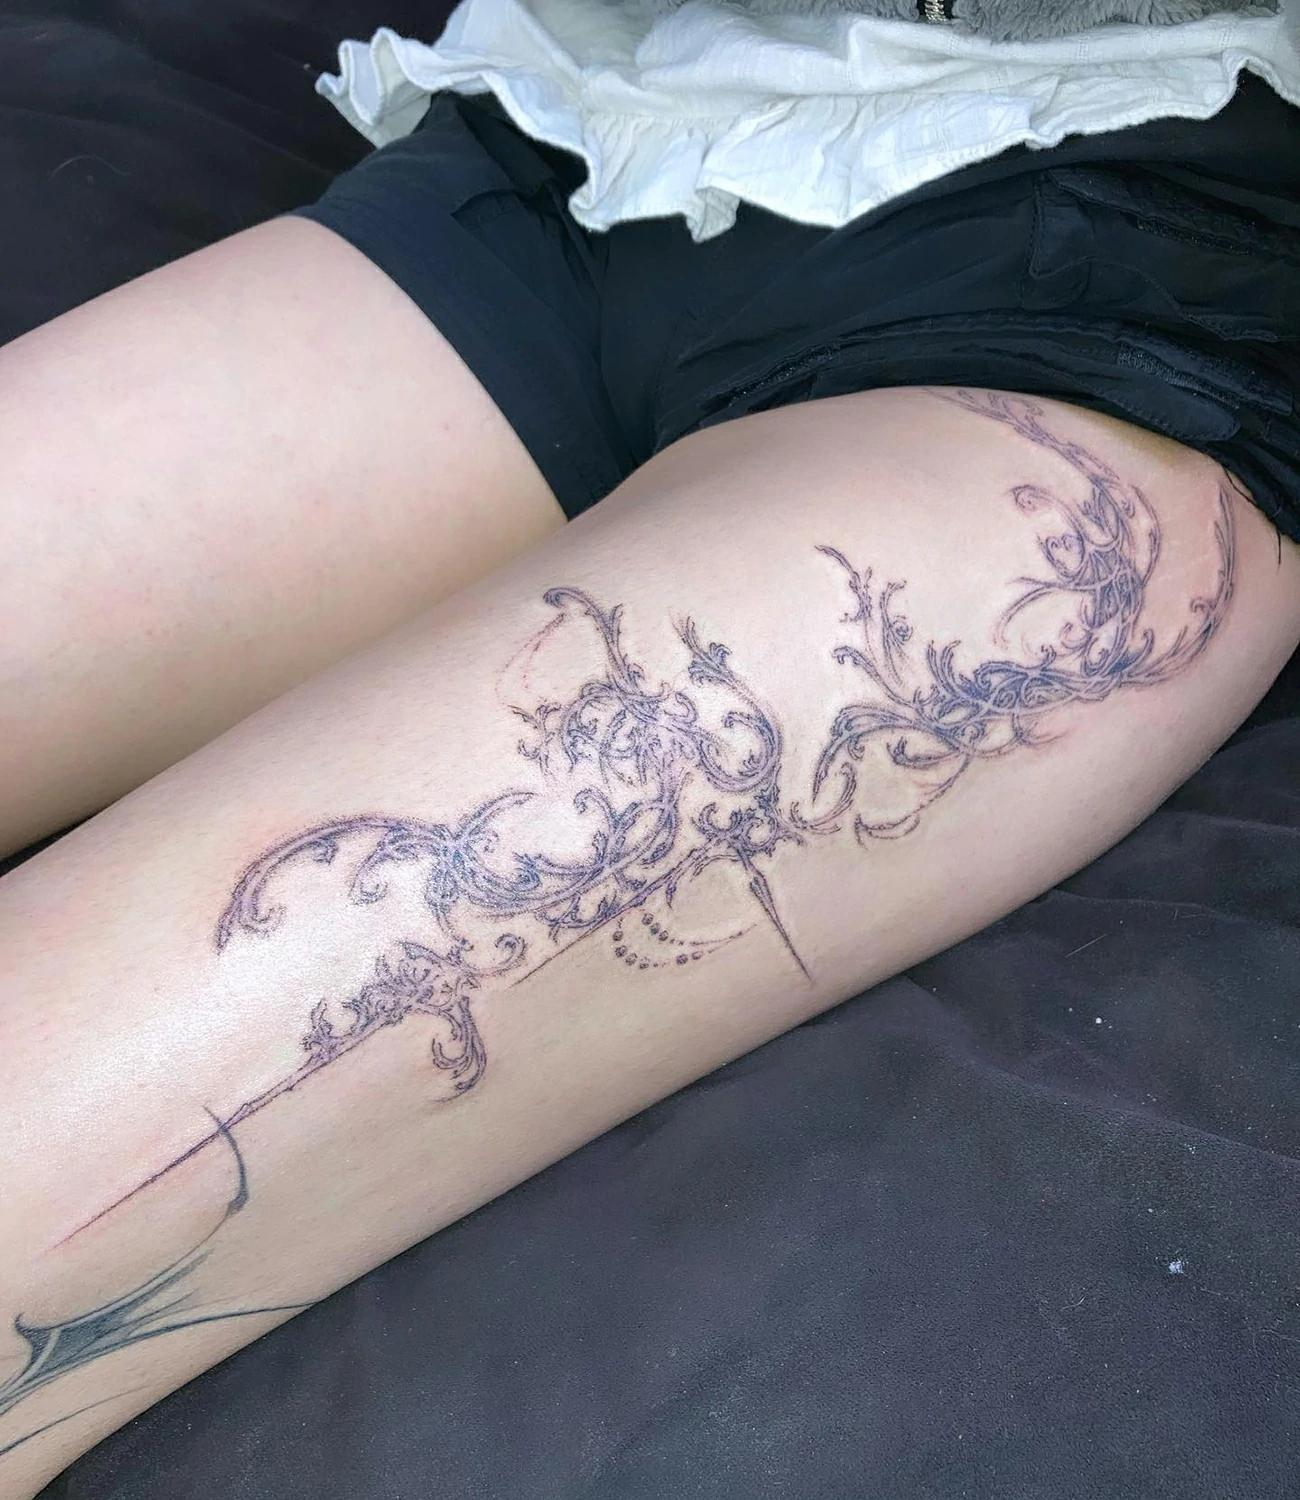 Cyber sigilism leg tattoos